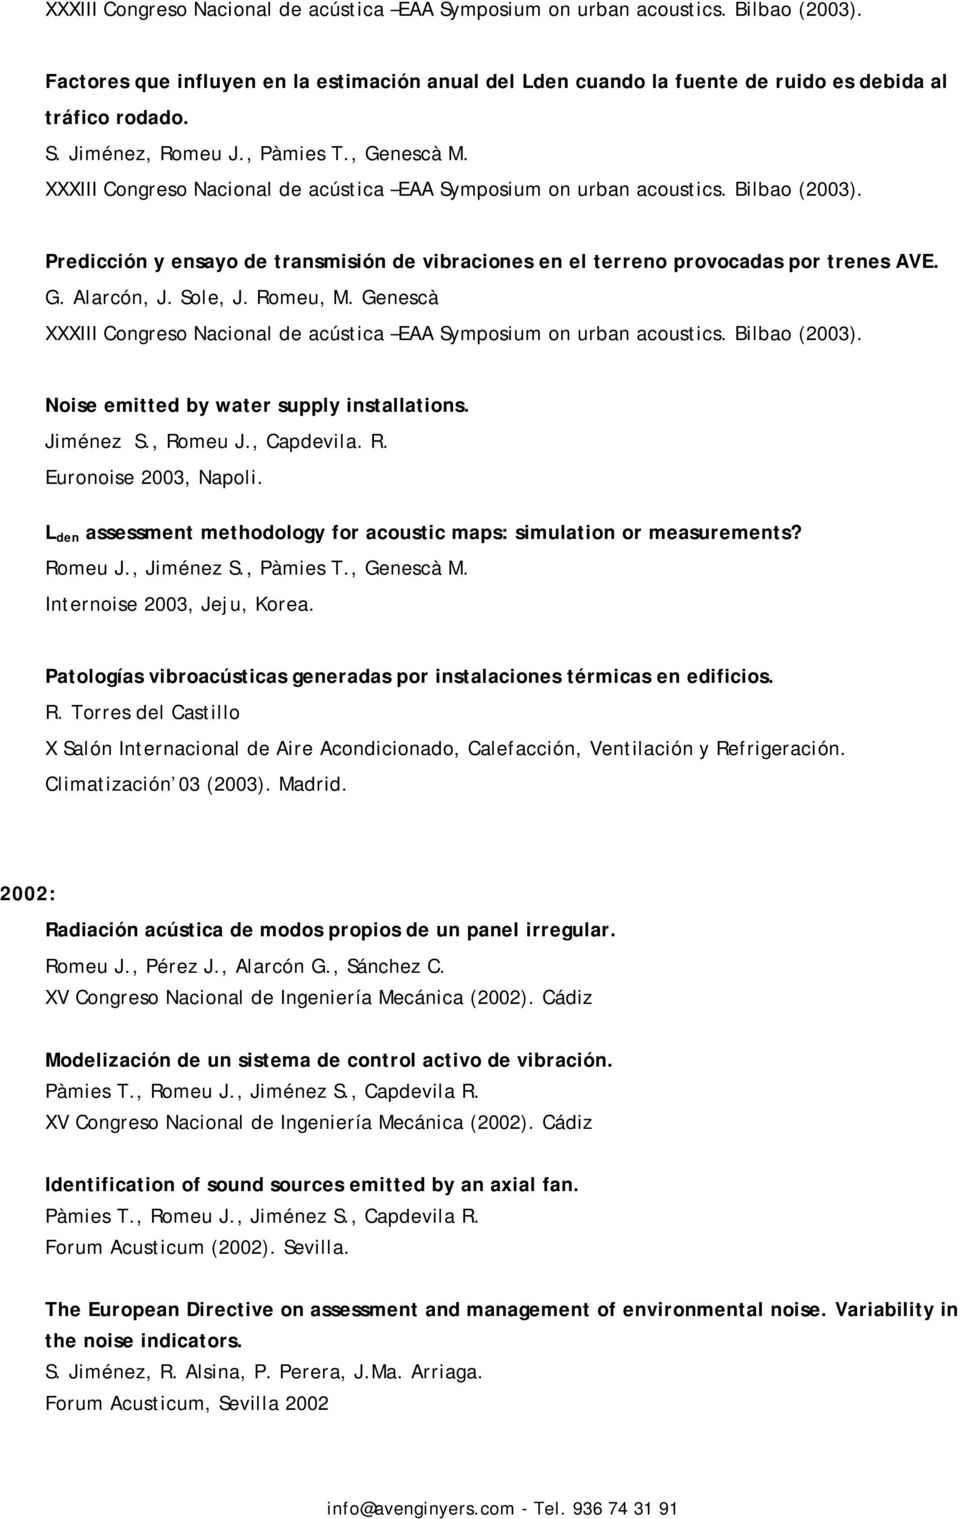 , Capdevila. R. Euronoise 2003, Napoli. L den assessment methodology for acoustic maps: simulation or measurements? Romeu J., Jiménez S., Pàmies T., Genescà M. Internoise 2003, Jeju, Korea.